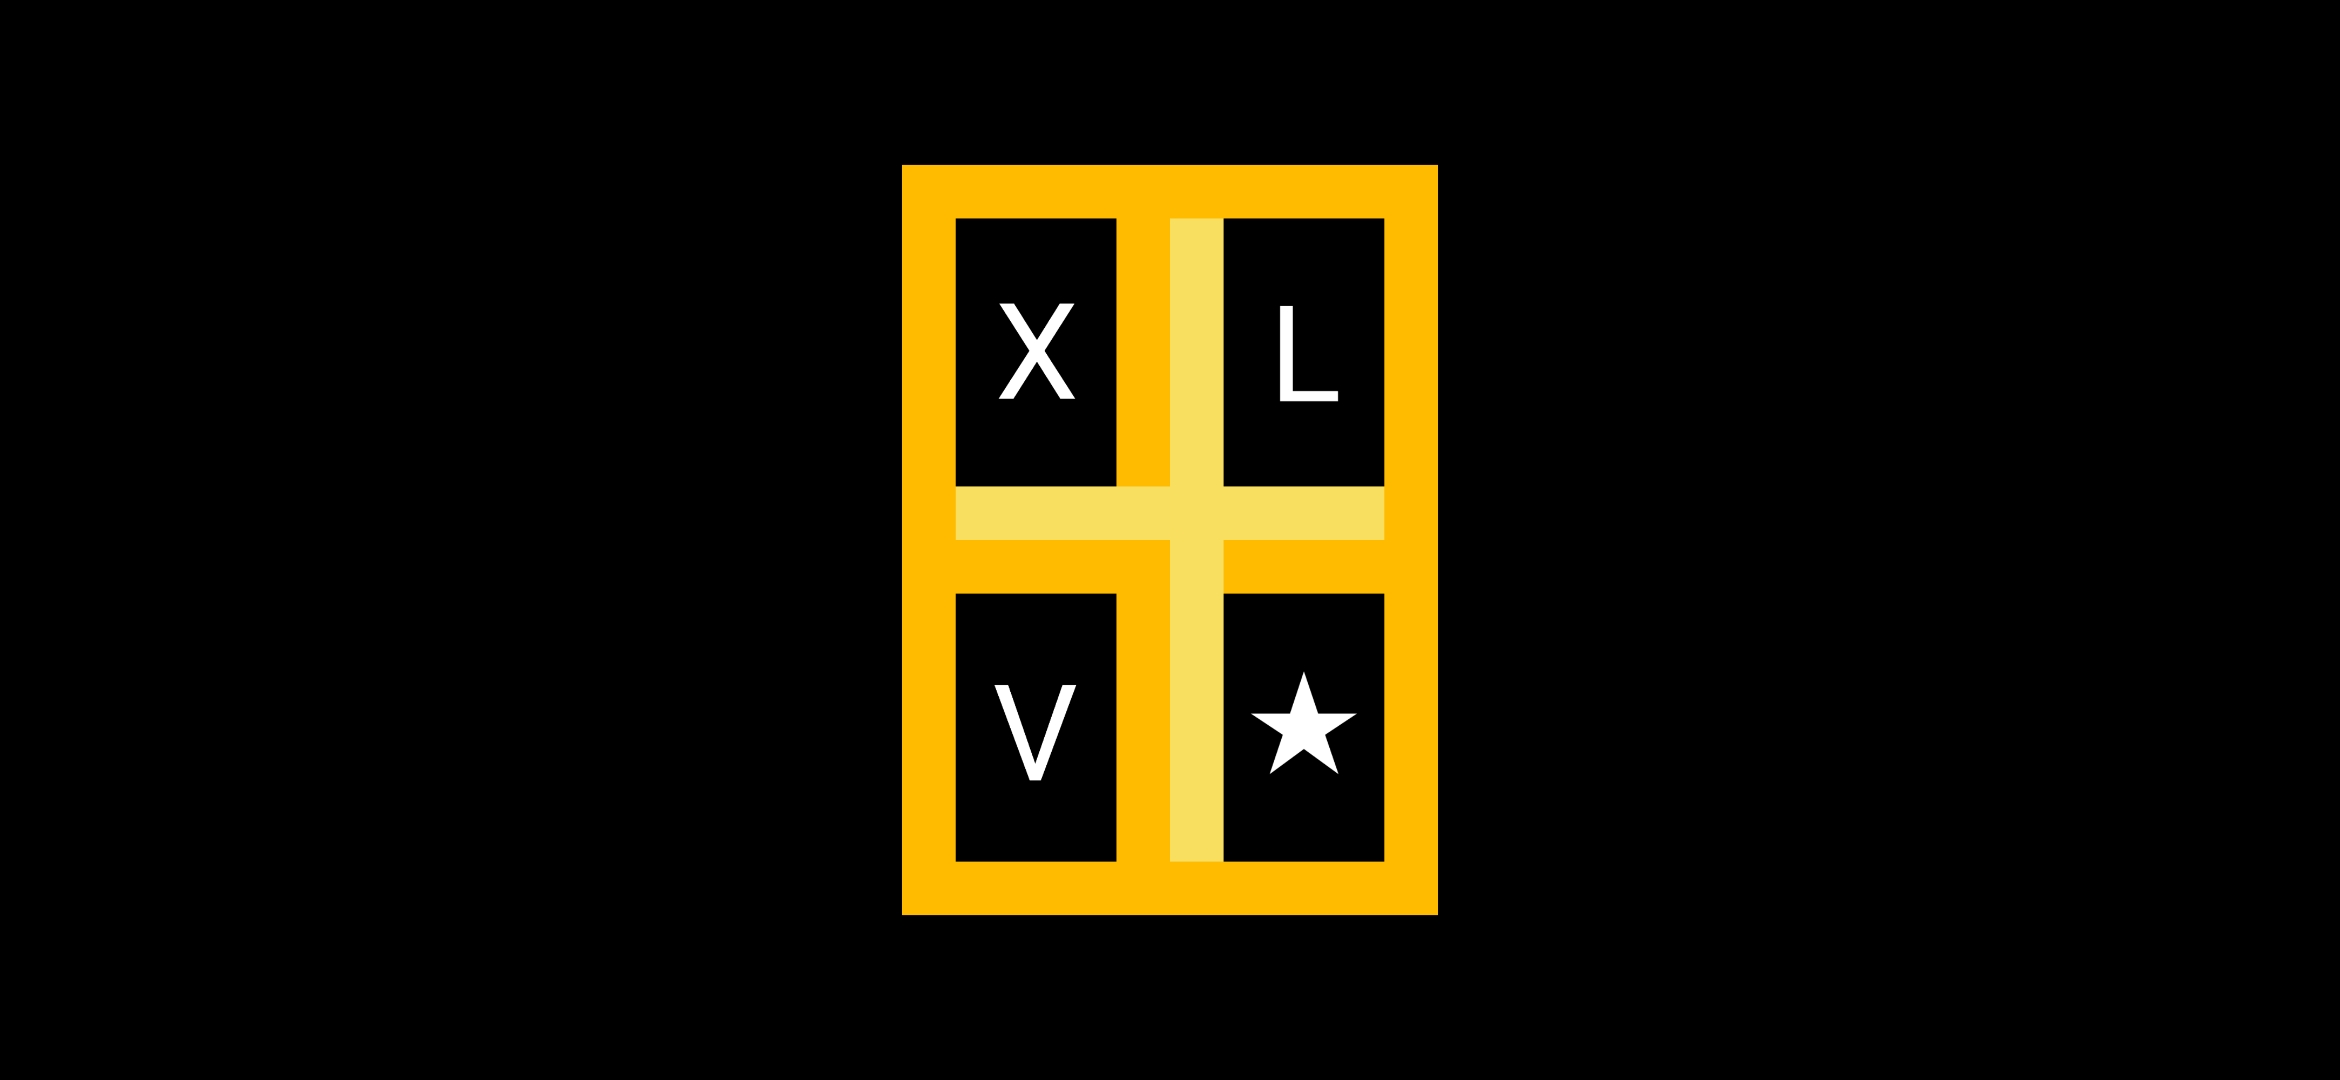 XLV Speed Test